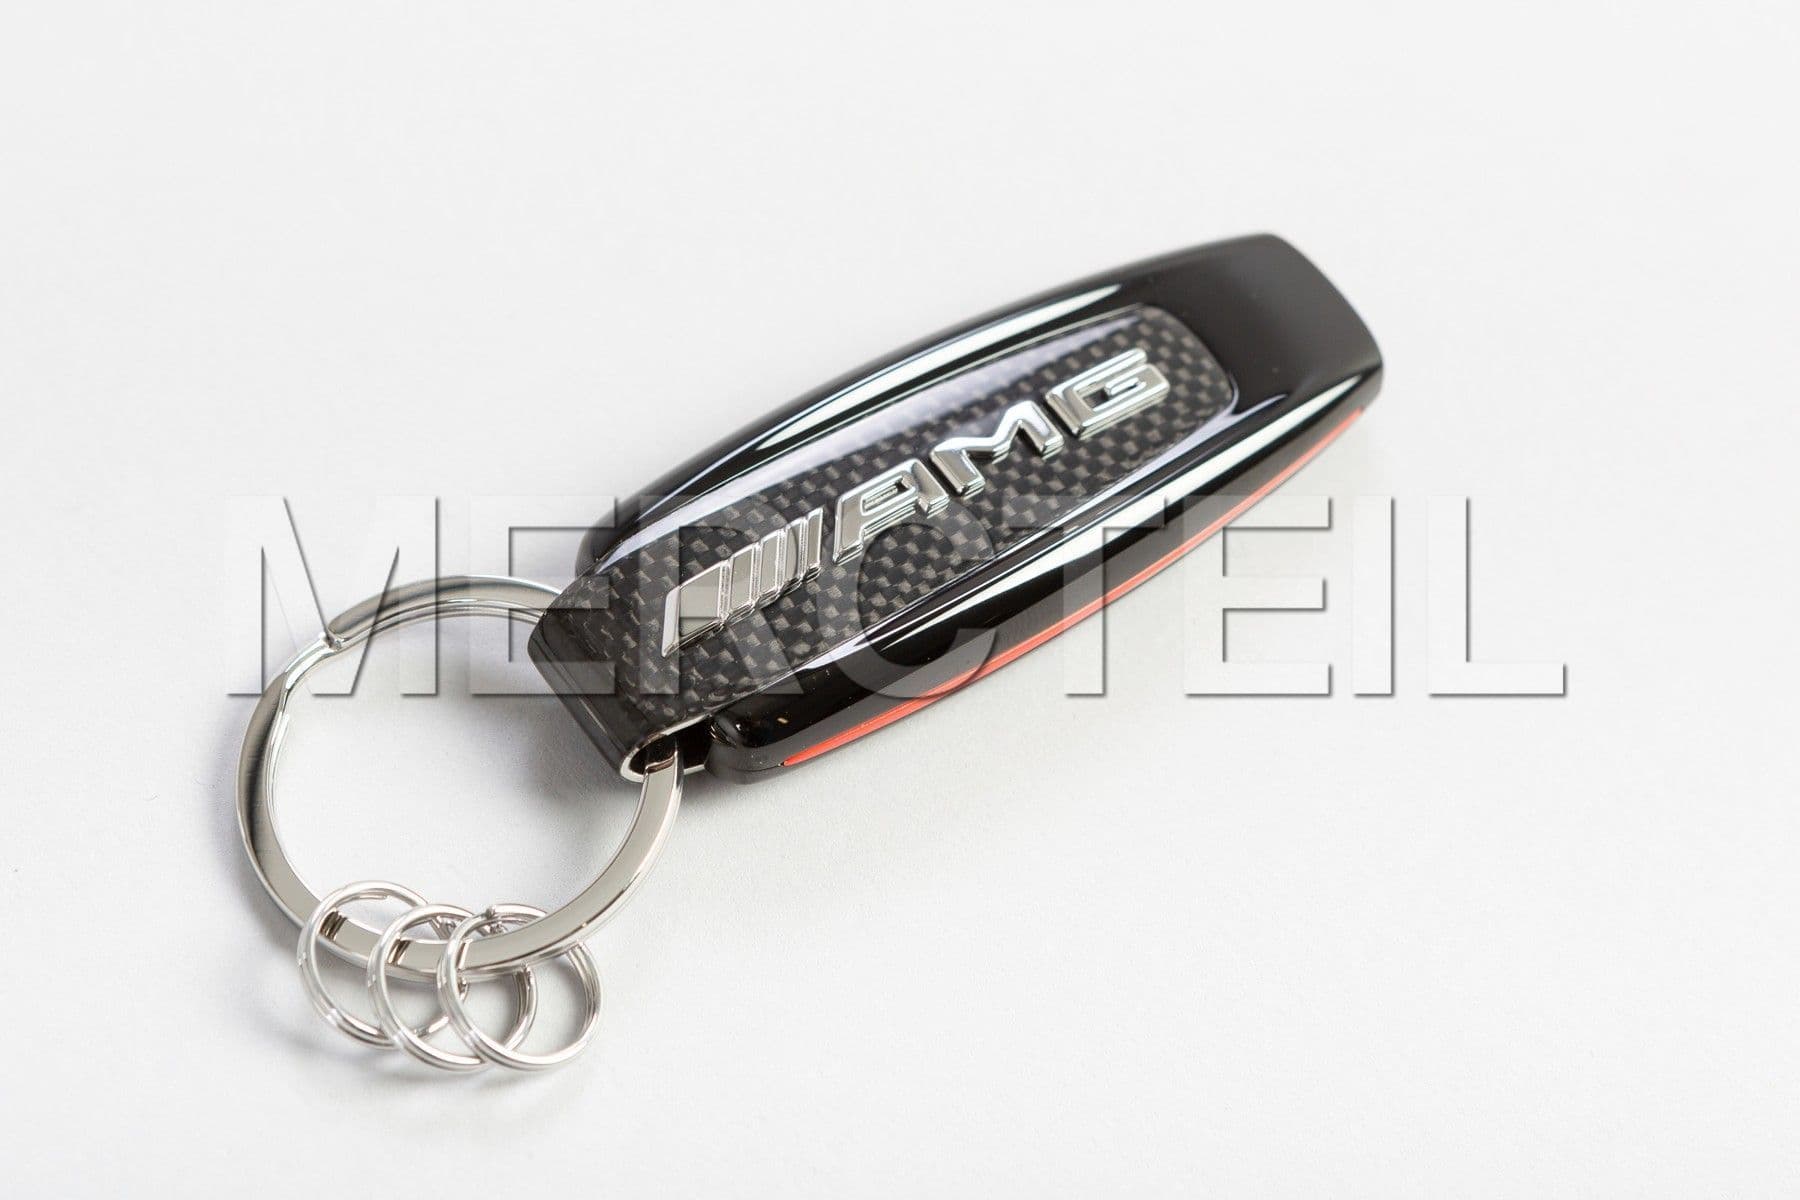 AMG Black Carbon Keyring Genuine Mercedes AMG Collection (Part number: B66953338)